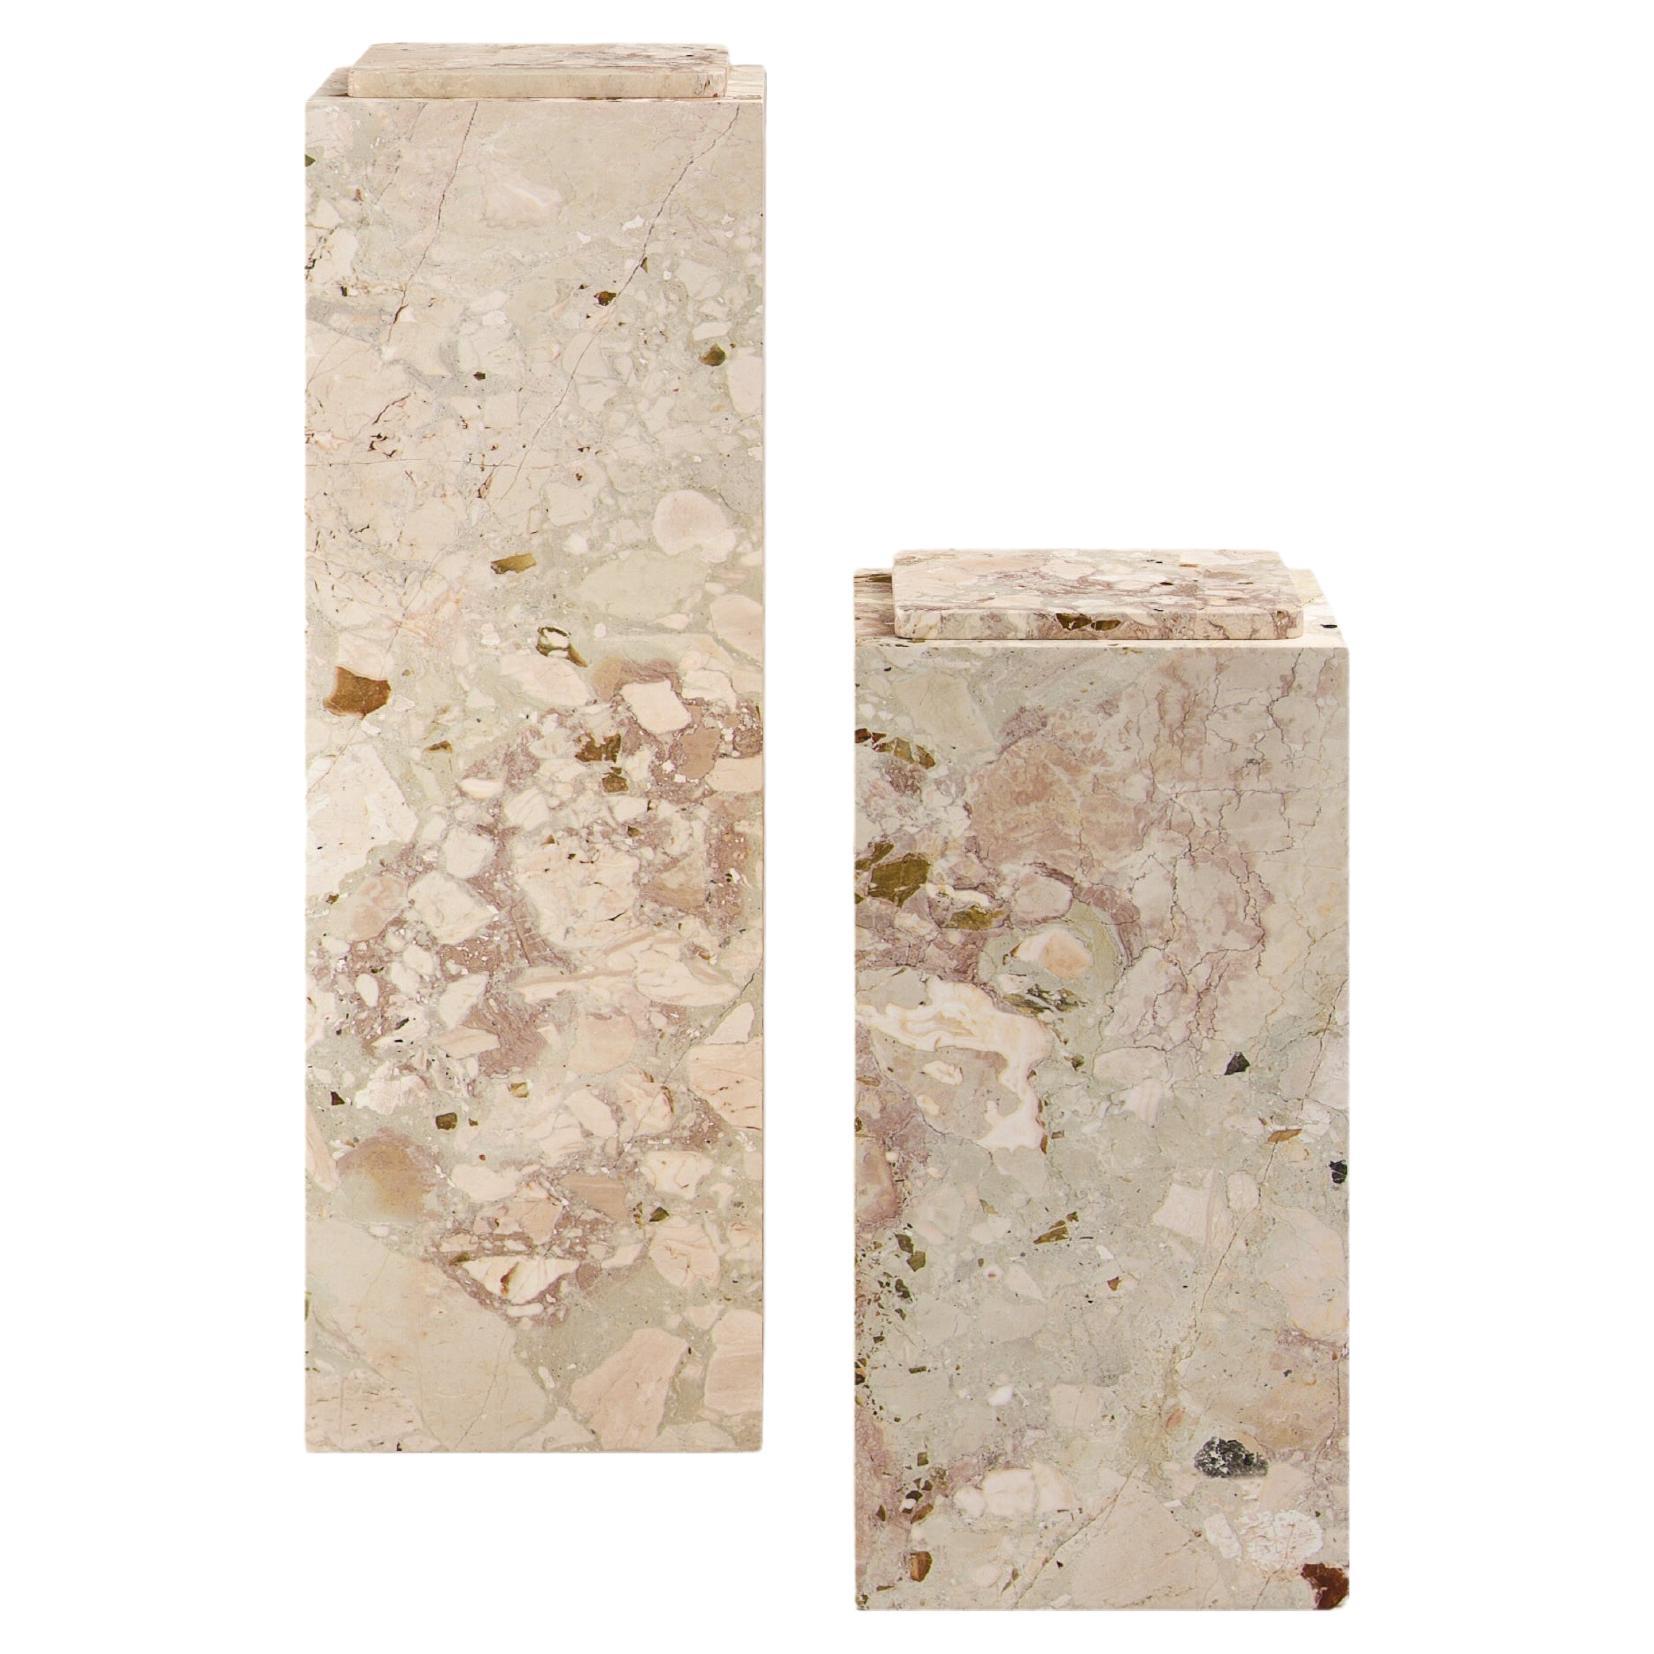 FORM(LA) Cubo Pedestal 12”L x 12"W x 36”H Breccia Rosa Marble